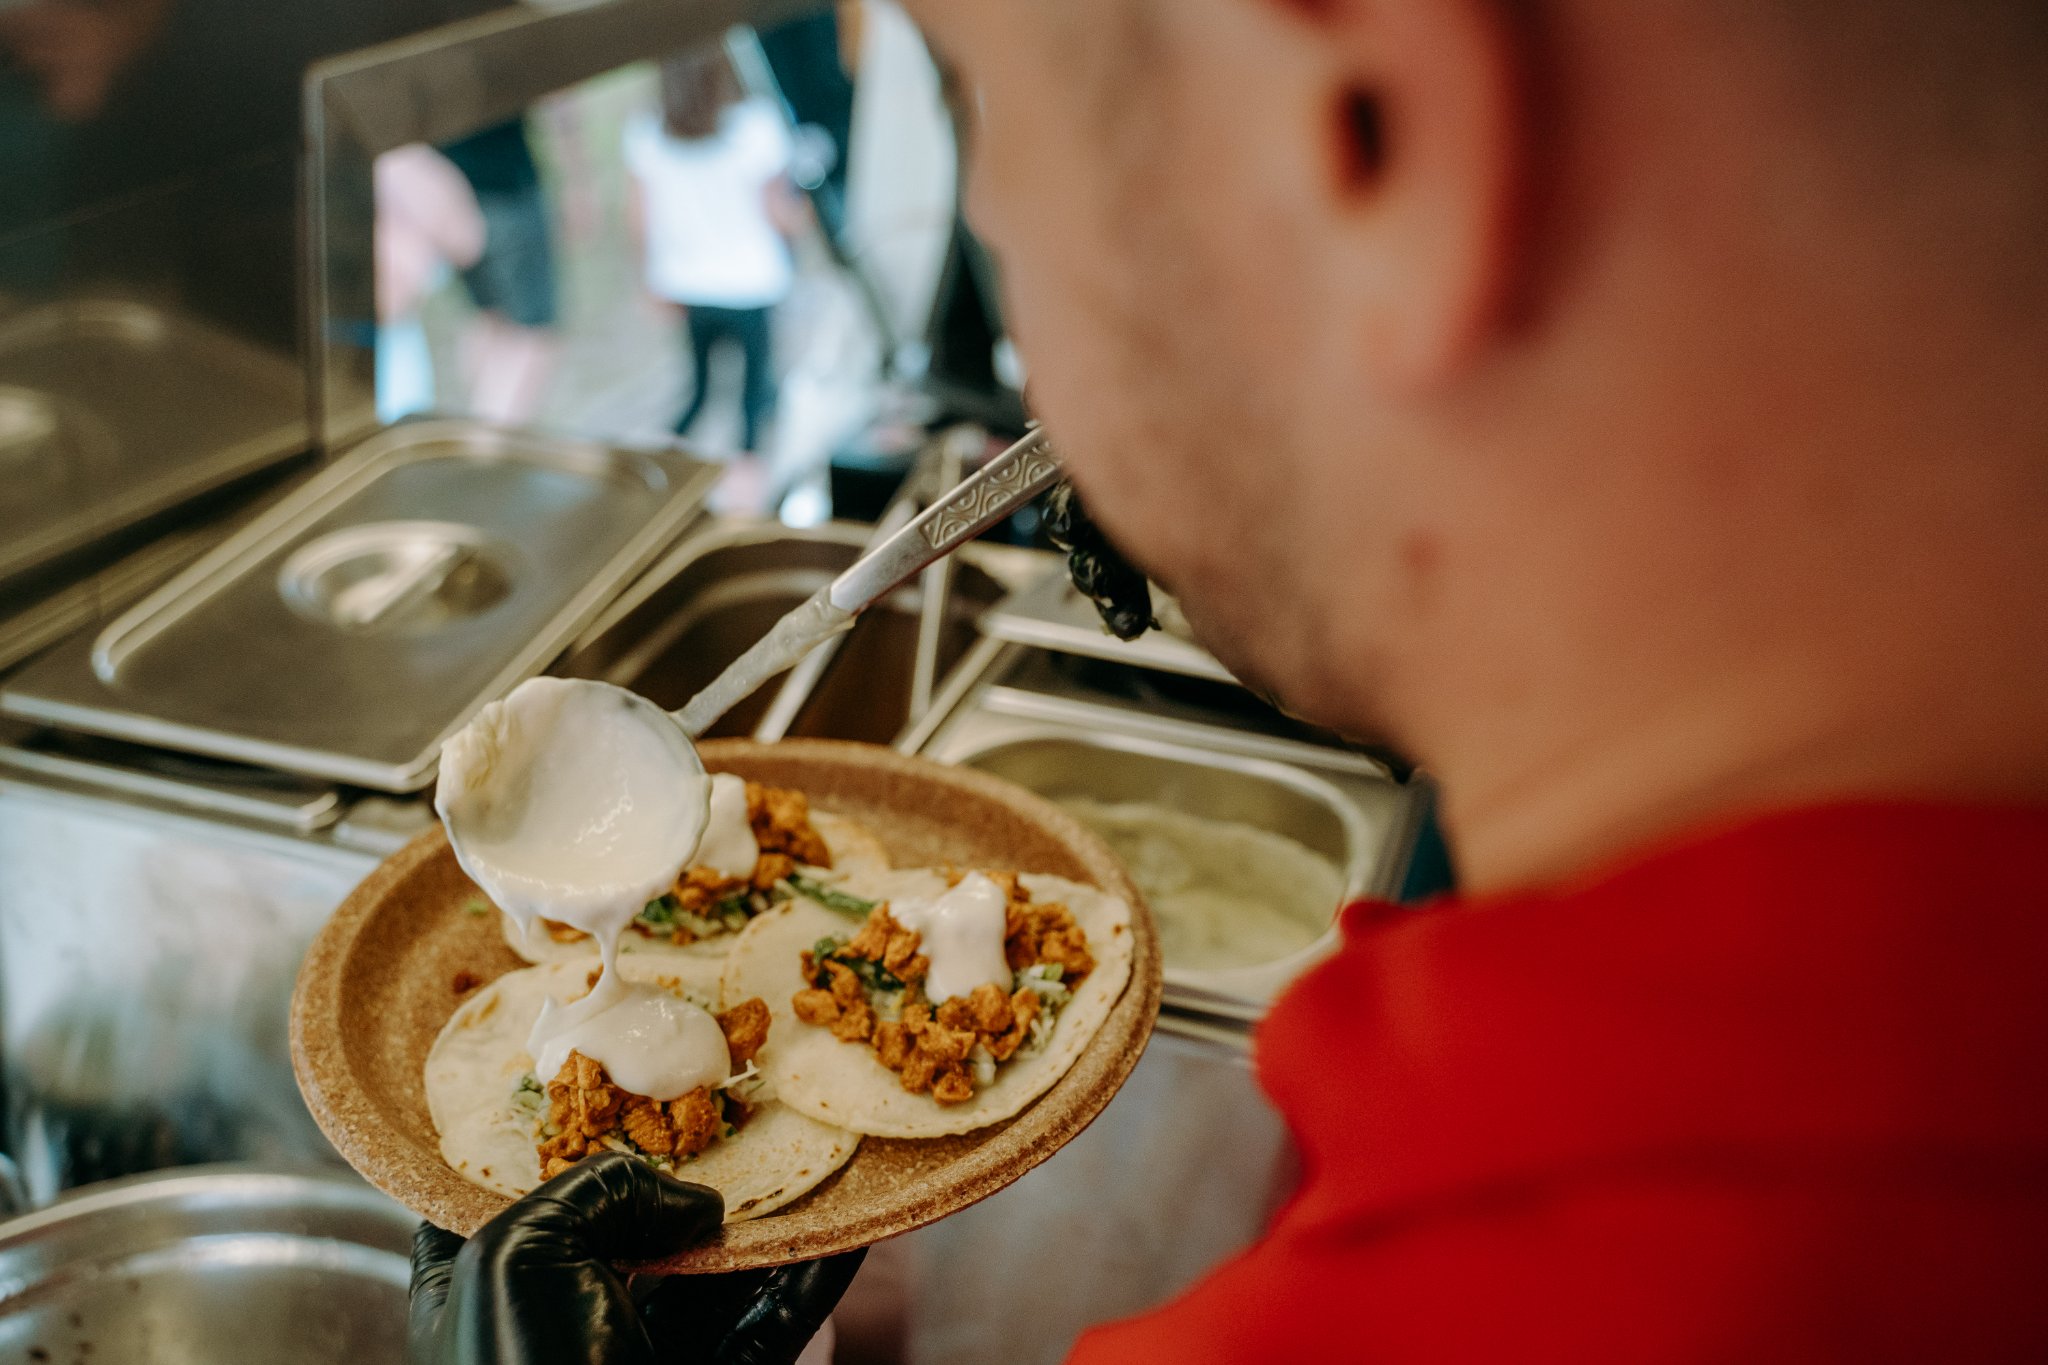 cel mai cunoscut festival de mâncare stradală, foodie, revine pe cetății - zeci de food truck-uri vă dau întâlnire pe cea mai frumoasă stradă din sibiu